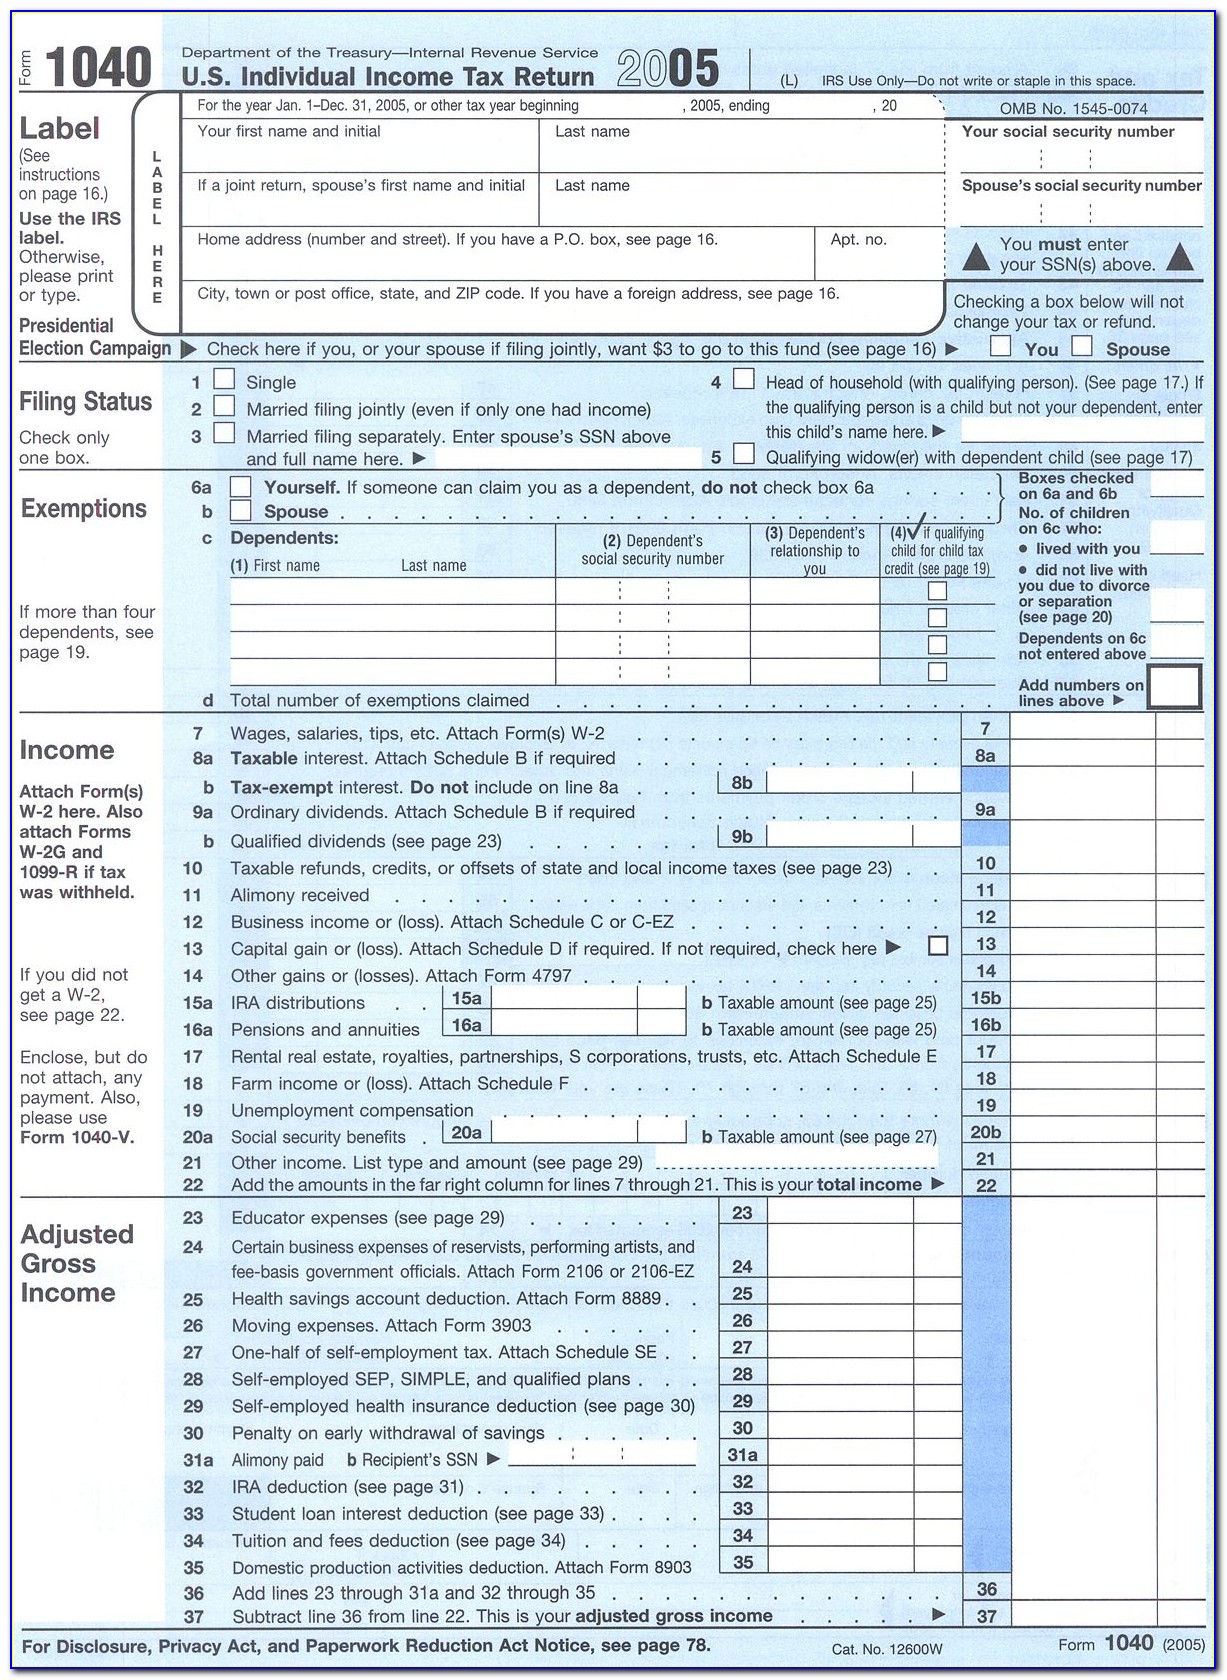 Taxes Form 1040